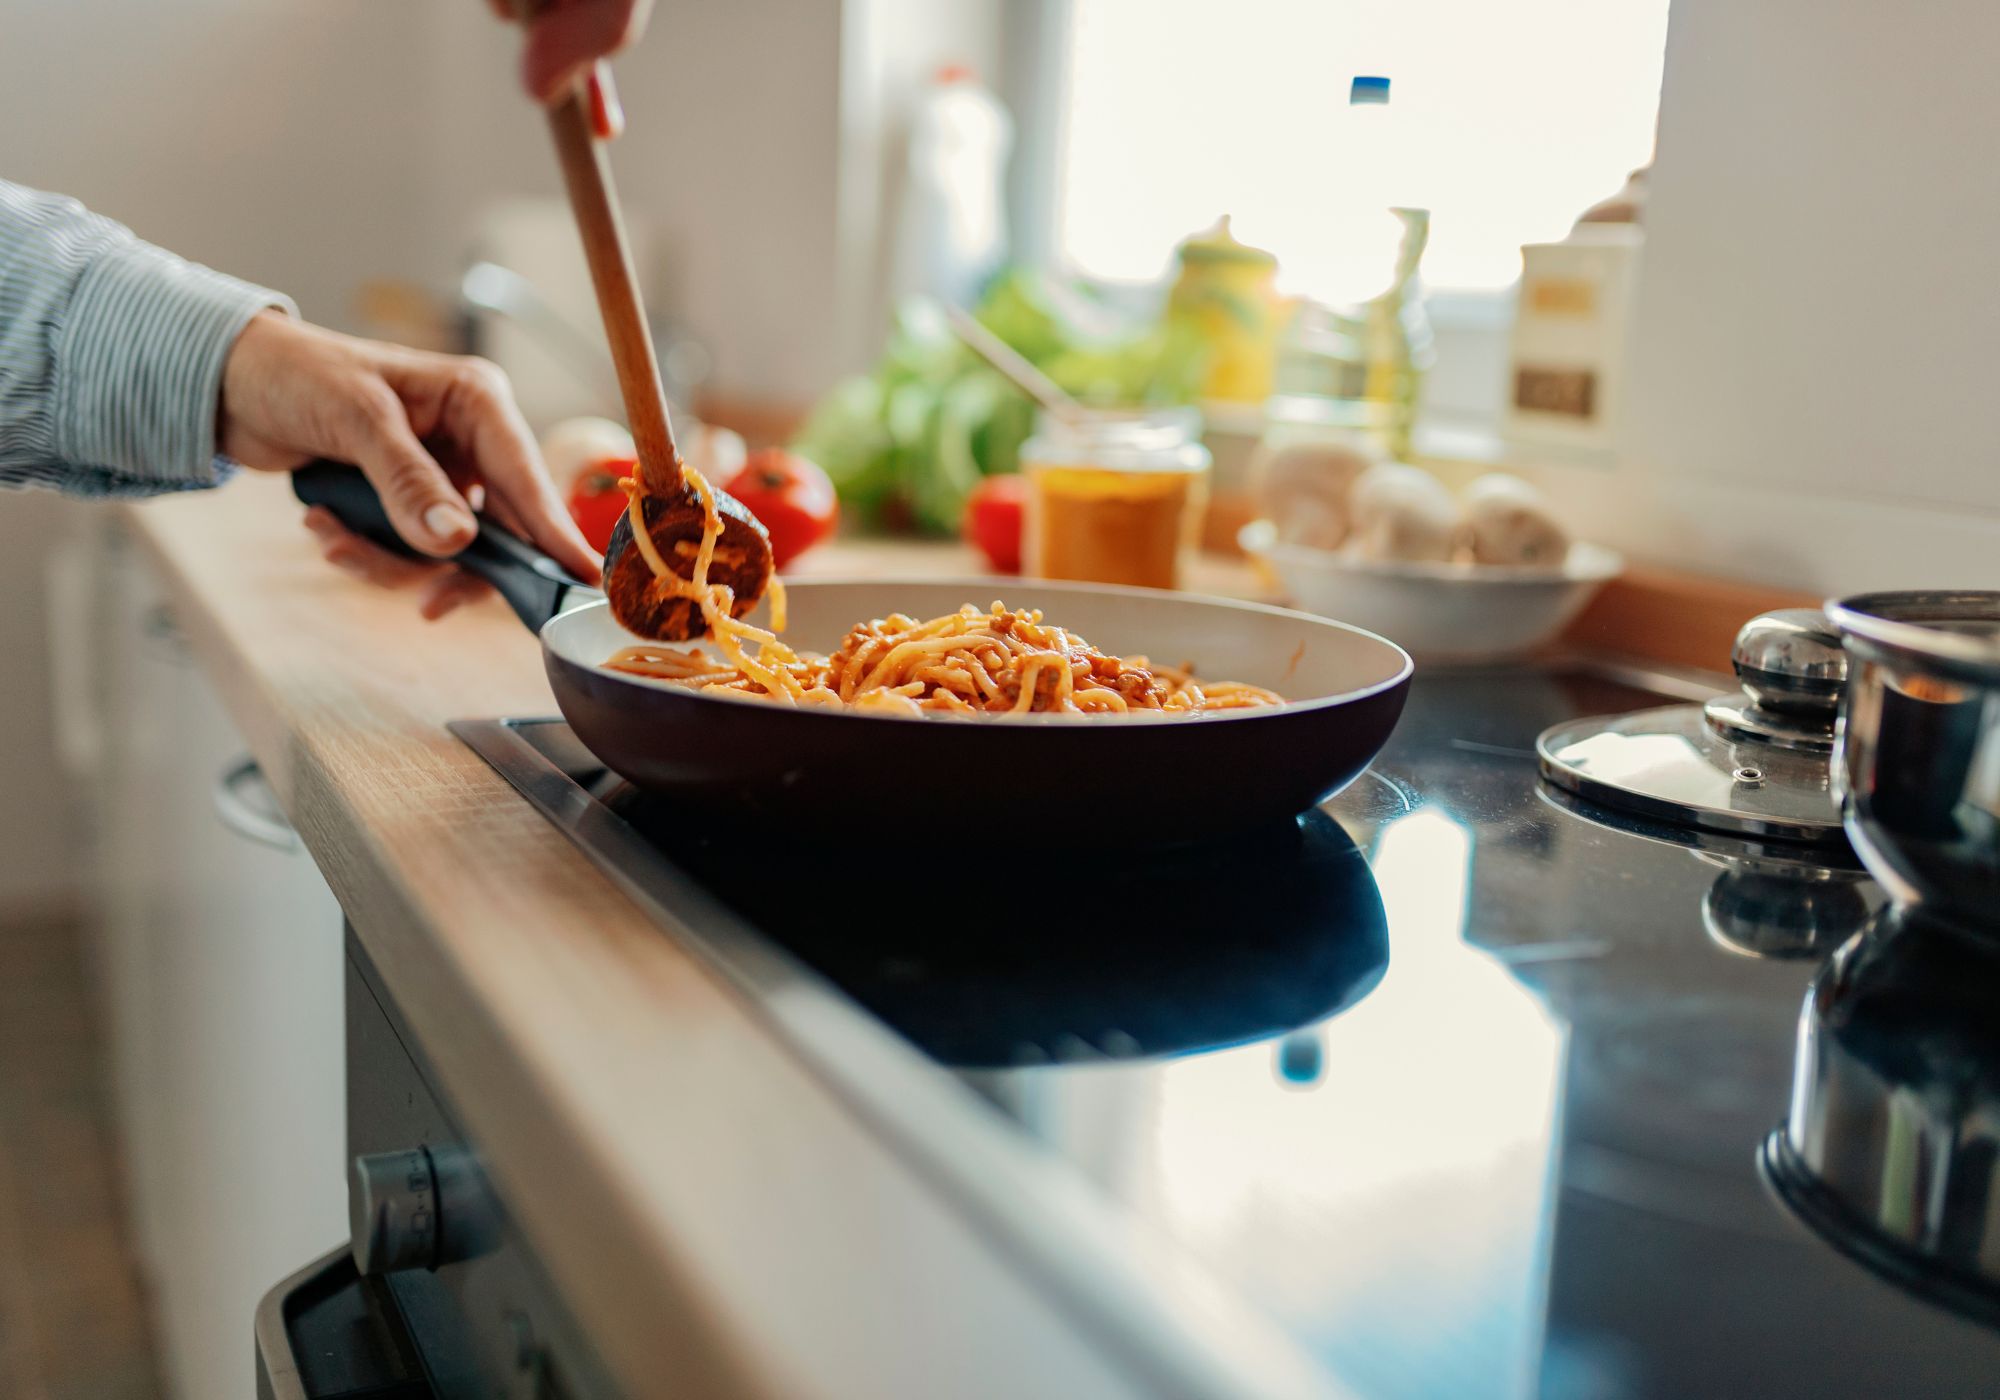 Кулинария, готовка как способ заработка 2023 - бизнес-идеи для женщин | Впервые мама